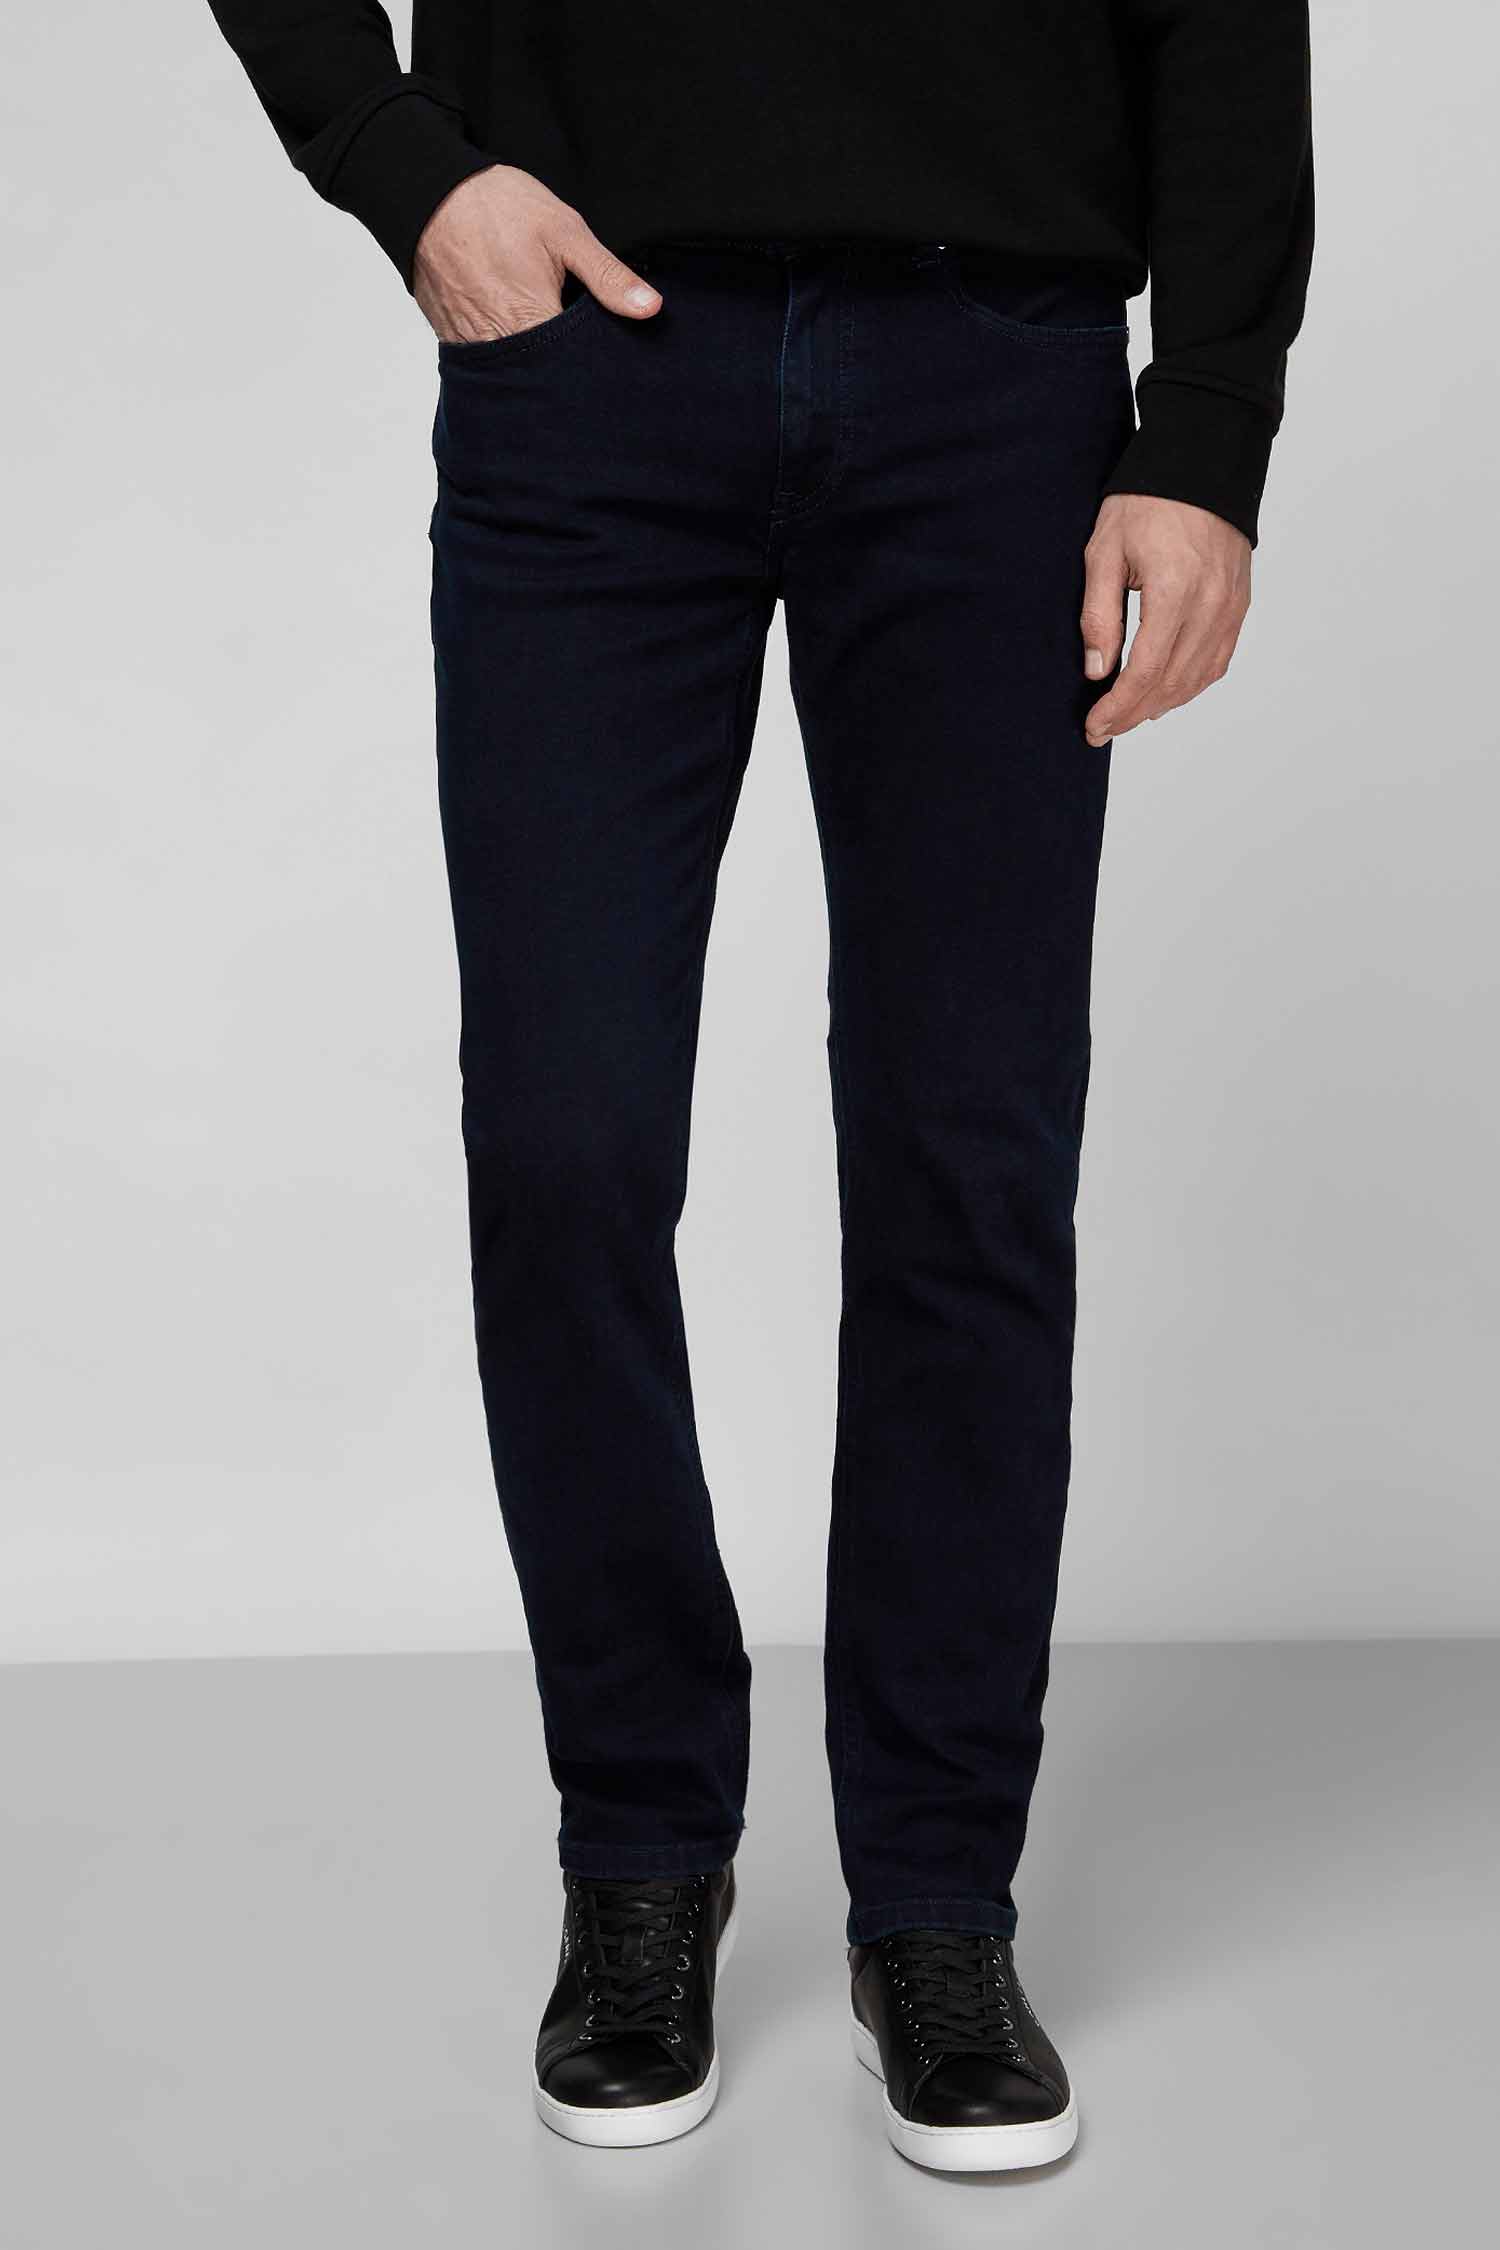 Мужские темно-синие джинсы Karl Lagerfeld 521830.265840;606